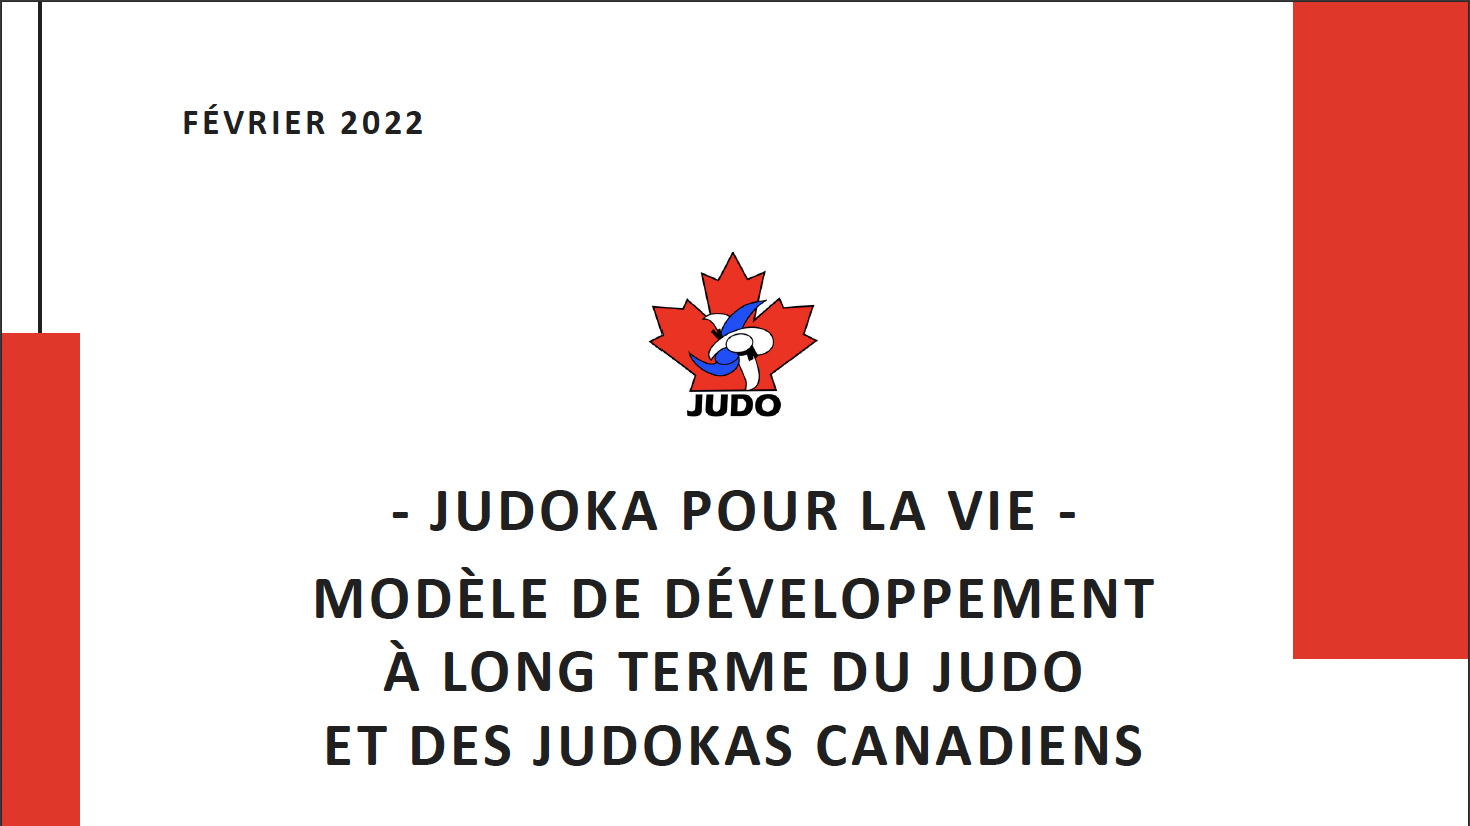 Couverture Judoka pour la vie février 2022